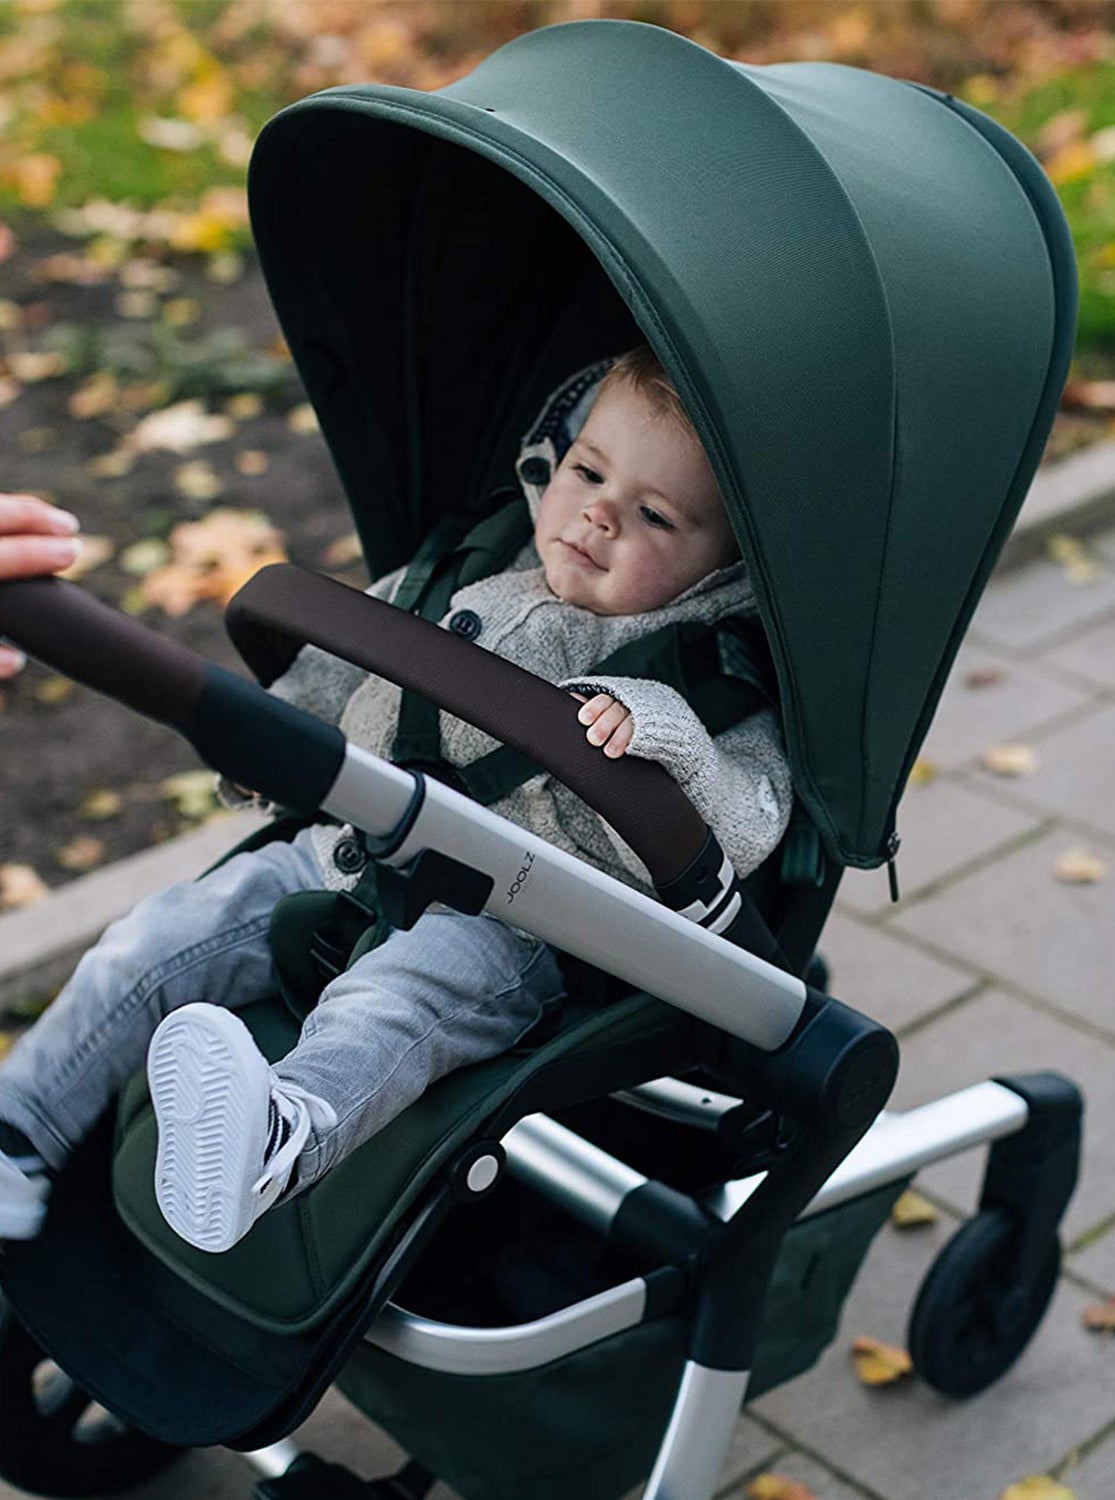 JOOLZ Hub Complete Baby Stroller - ANB Baby -bis-hidden